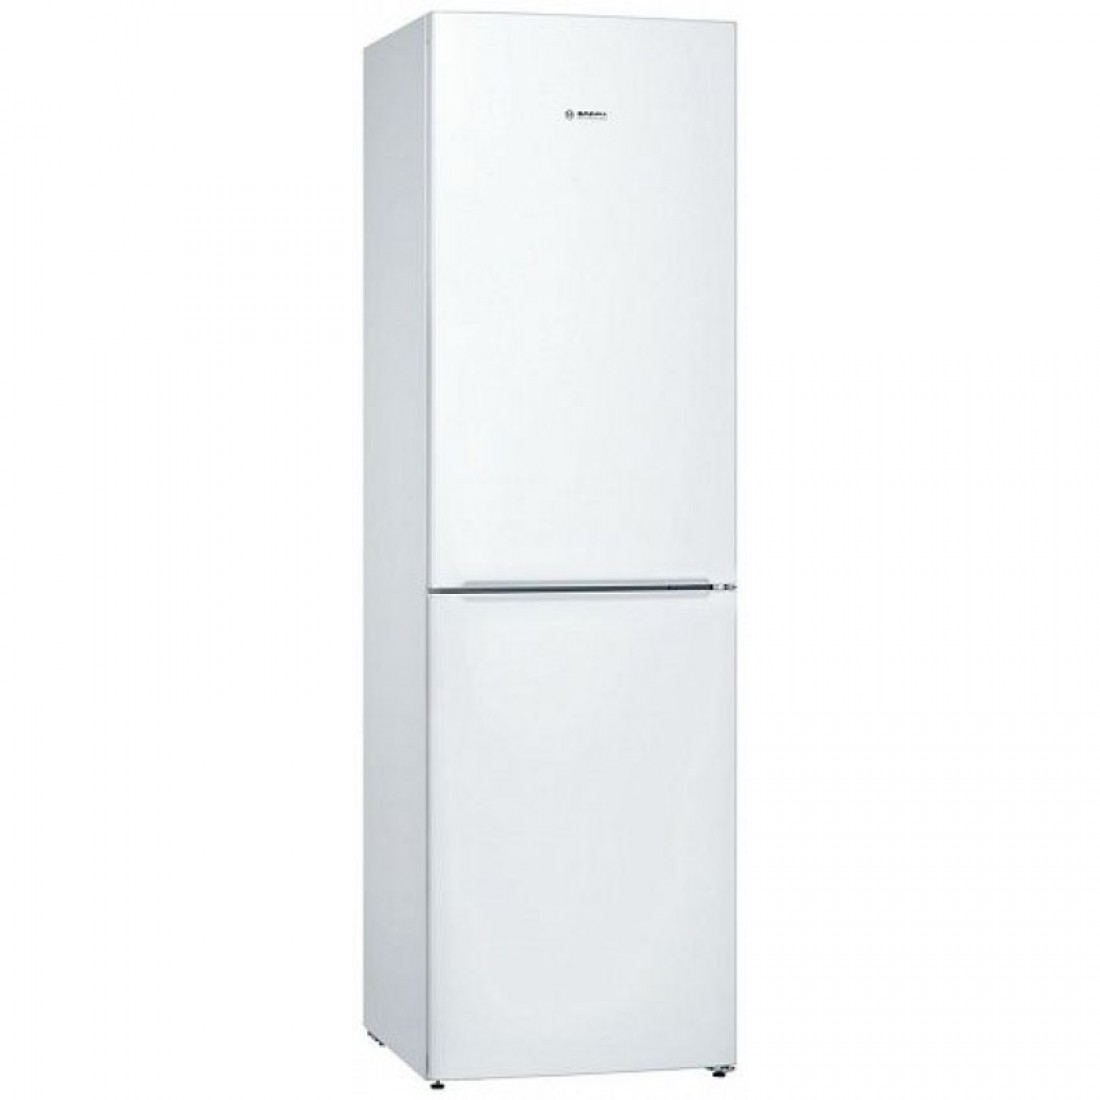 Купить холодильник в воронеже недорого. Bosch kgv39xw22r. Холодильник Bosch kgv36nw1ar. Холодильник бош kgs36xw20r. Холодильник Bosch KGS 36xw20r.